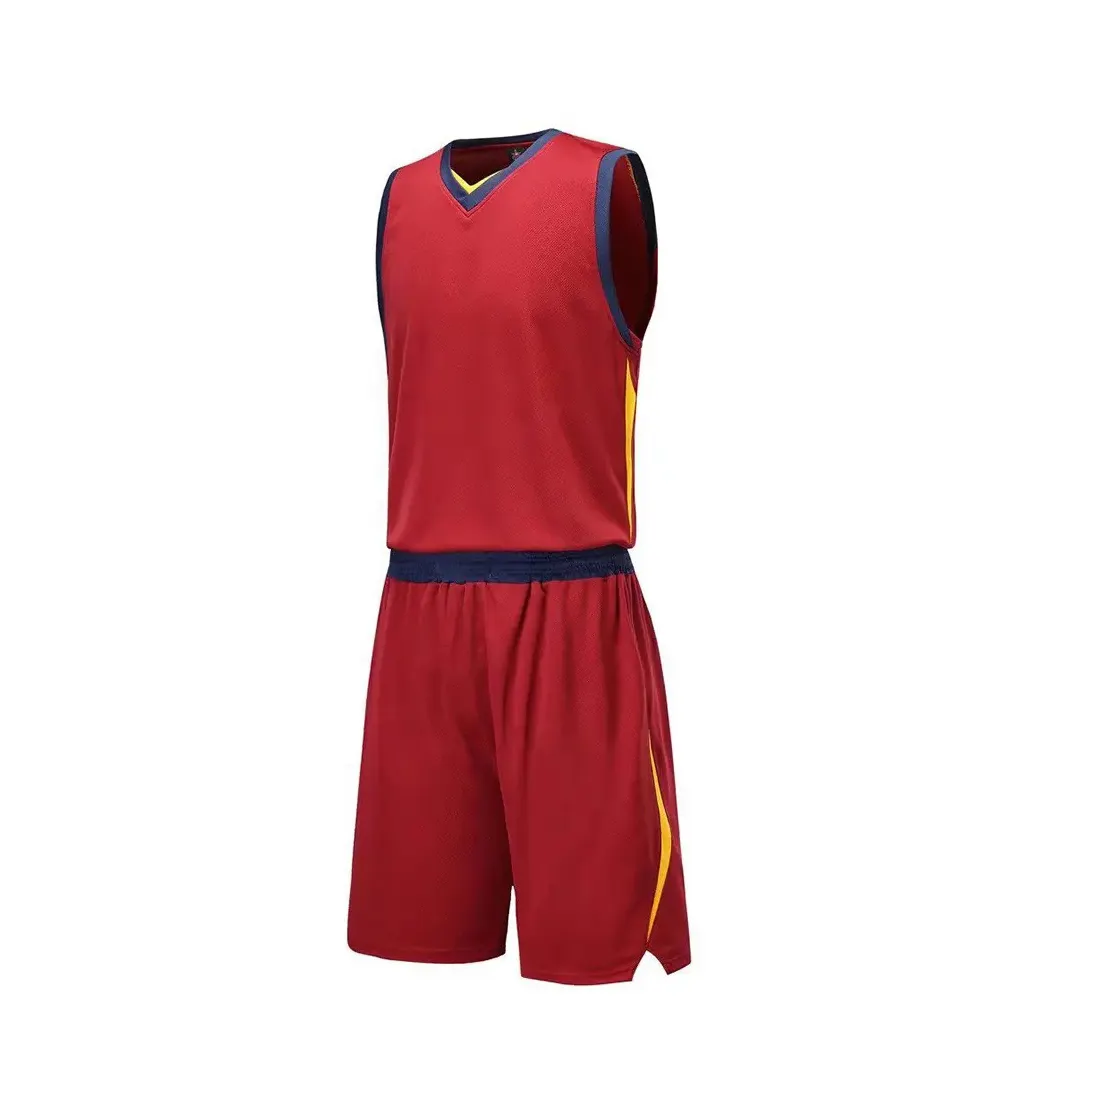 Nuevo peso ligero bajo MOQ uniforme de baloncesto para la venta más nuevo color precio al por mayor uniforme de baloncesto